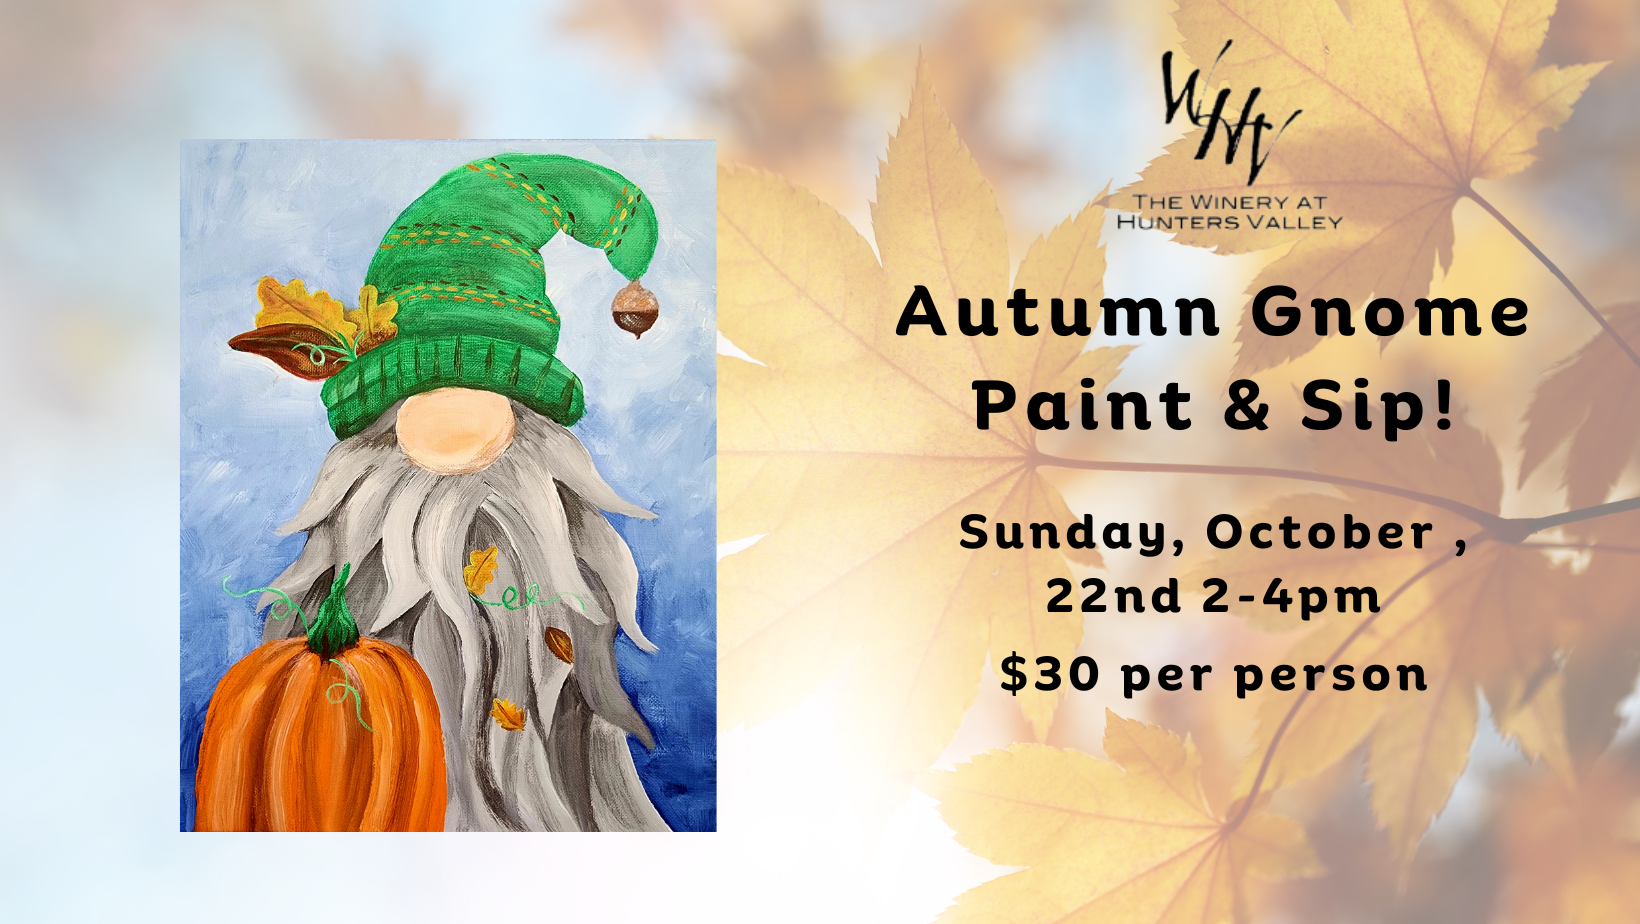 Autumn Gnome Paint & Sip!